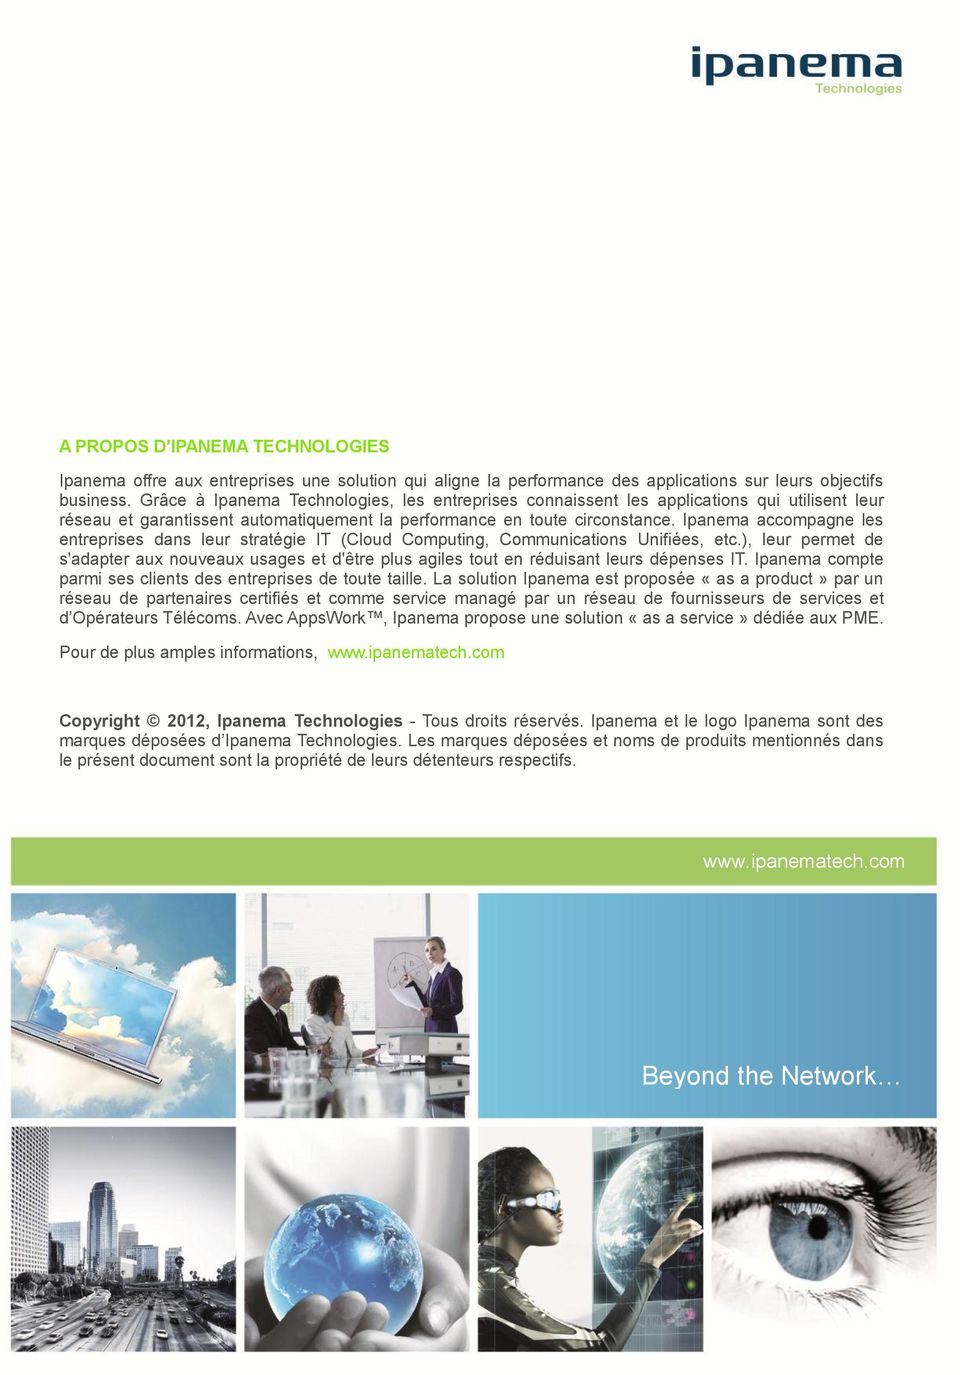 Ipanema accompagne les entreprises dans leur stratégie IT (Cloud Computing, Communications Unifiées, etc.